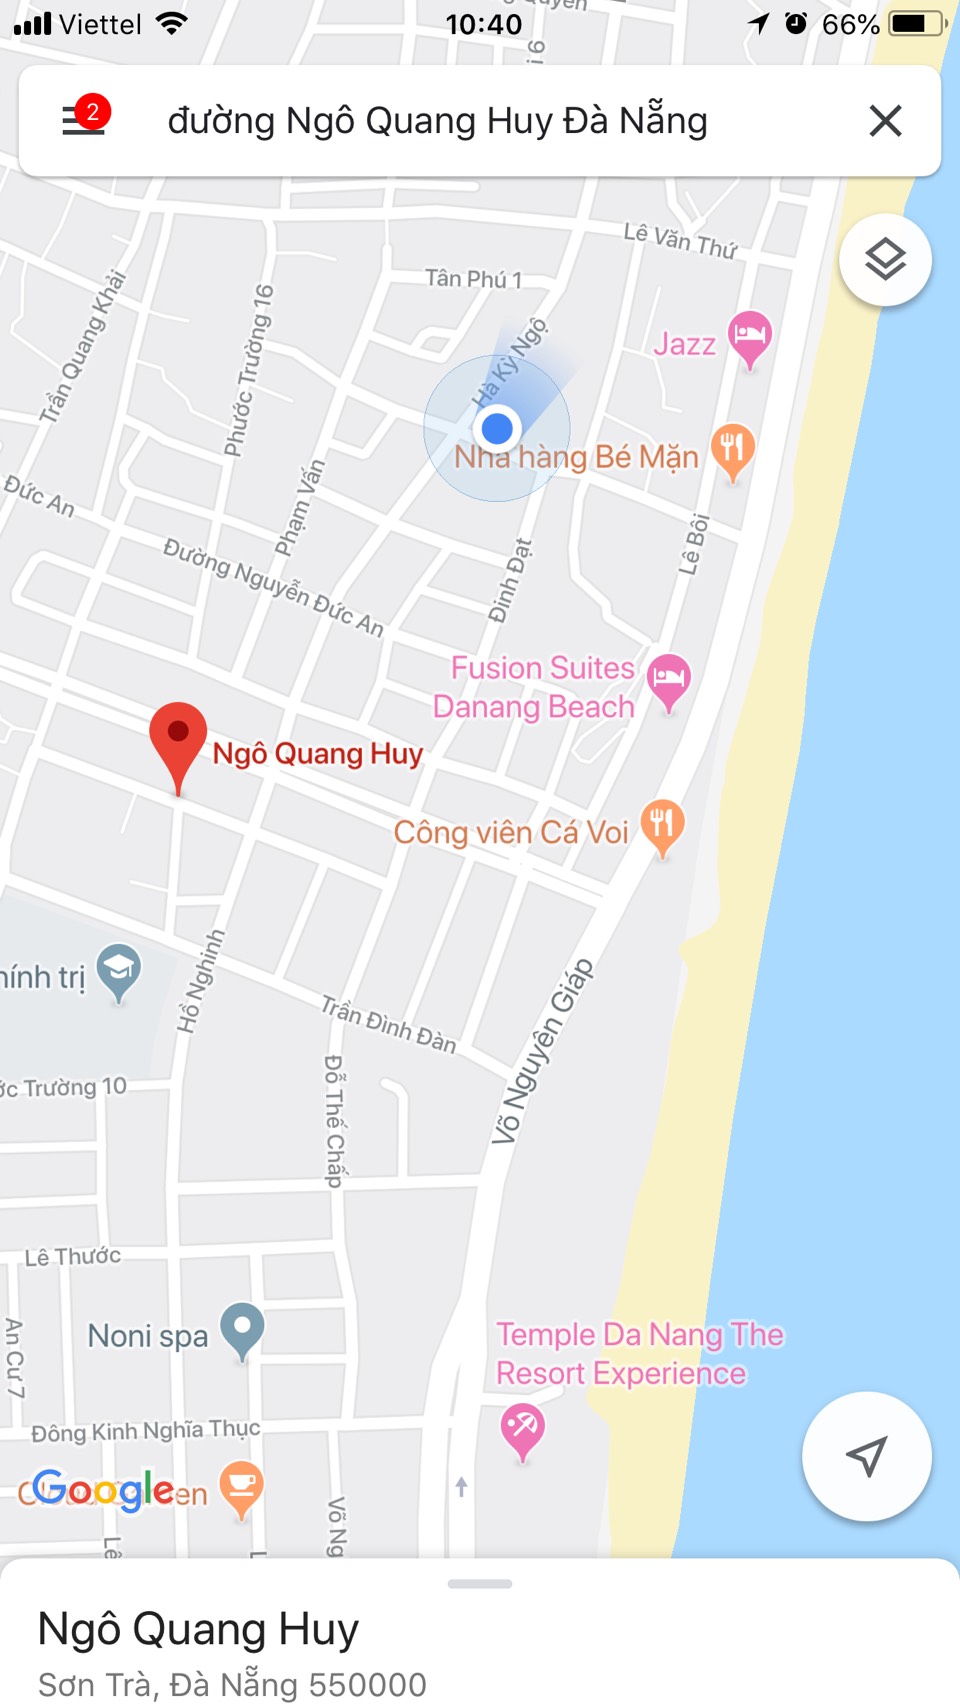 Bán đất ven biển Đà Nẵng đẹp, 2 MT đường Hồ Nghinh và Ngô Quang Huy,141 m2.LH:0905.606.910